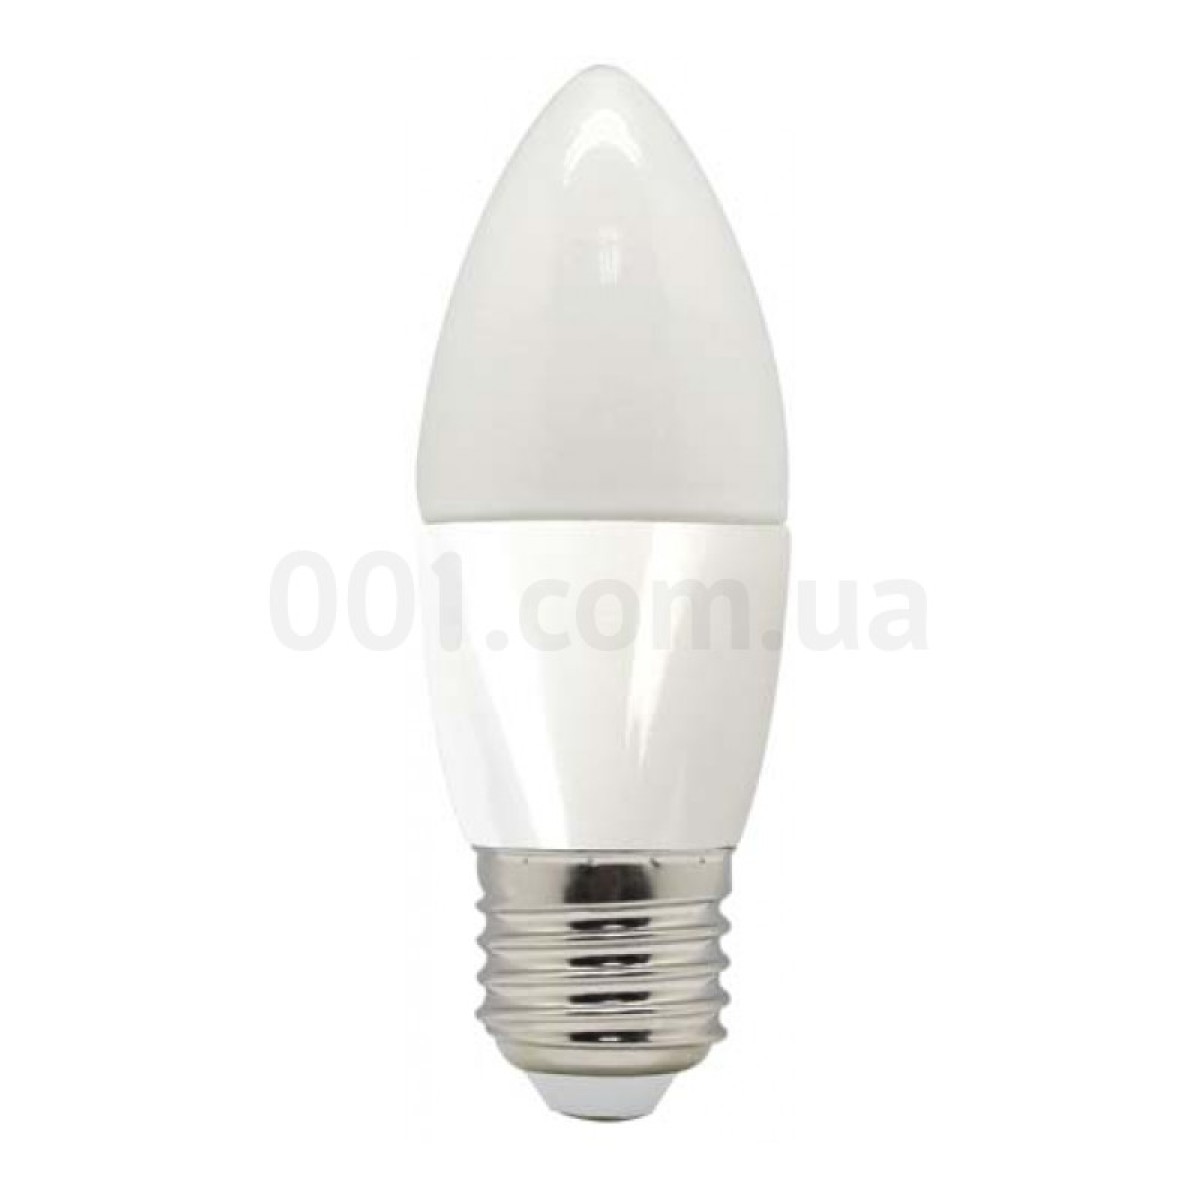 Светодиодная лампа LB-97 C37 (свеча) 5Вт 2700K E27, Feron 256_256.jpg